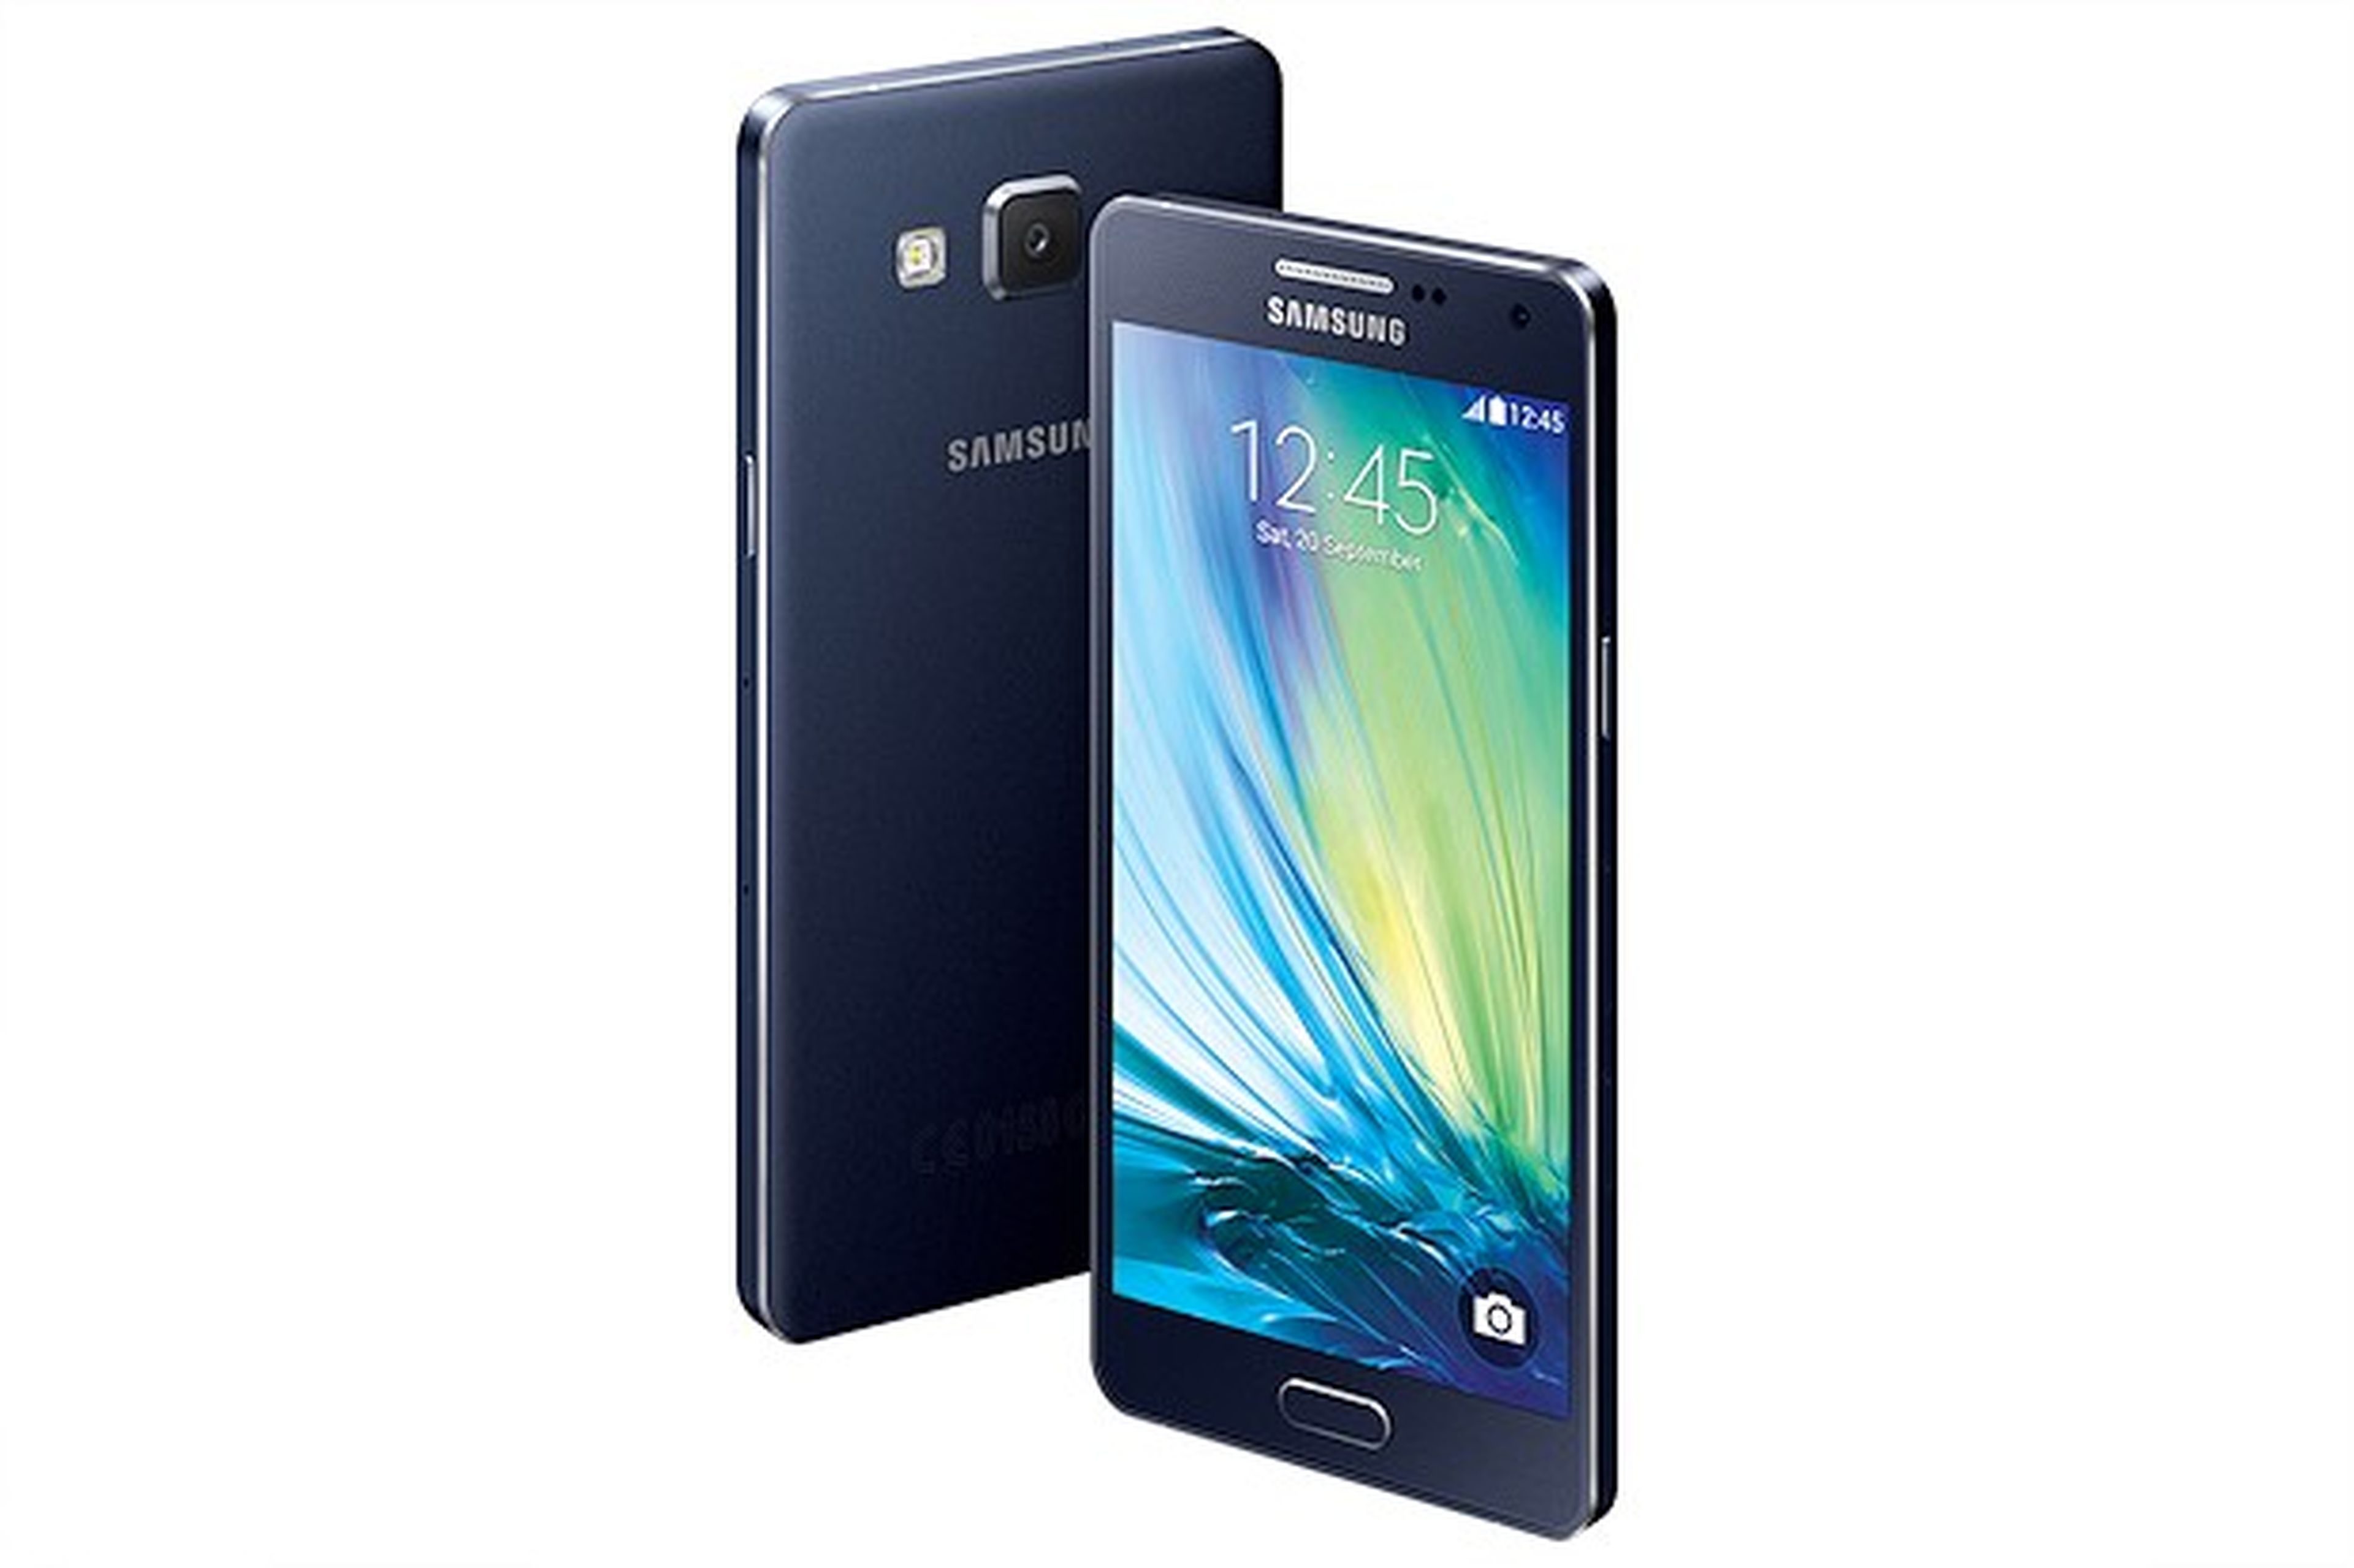 Análisis del Samsung Galaxy A5: ¿más que una cara bonita? | Computer Hoy